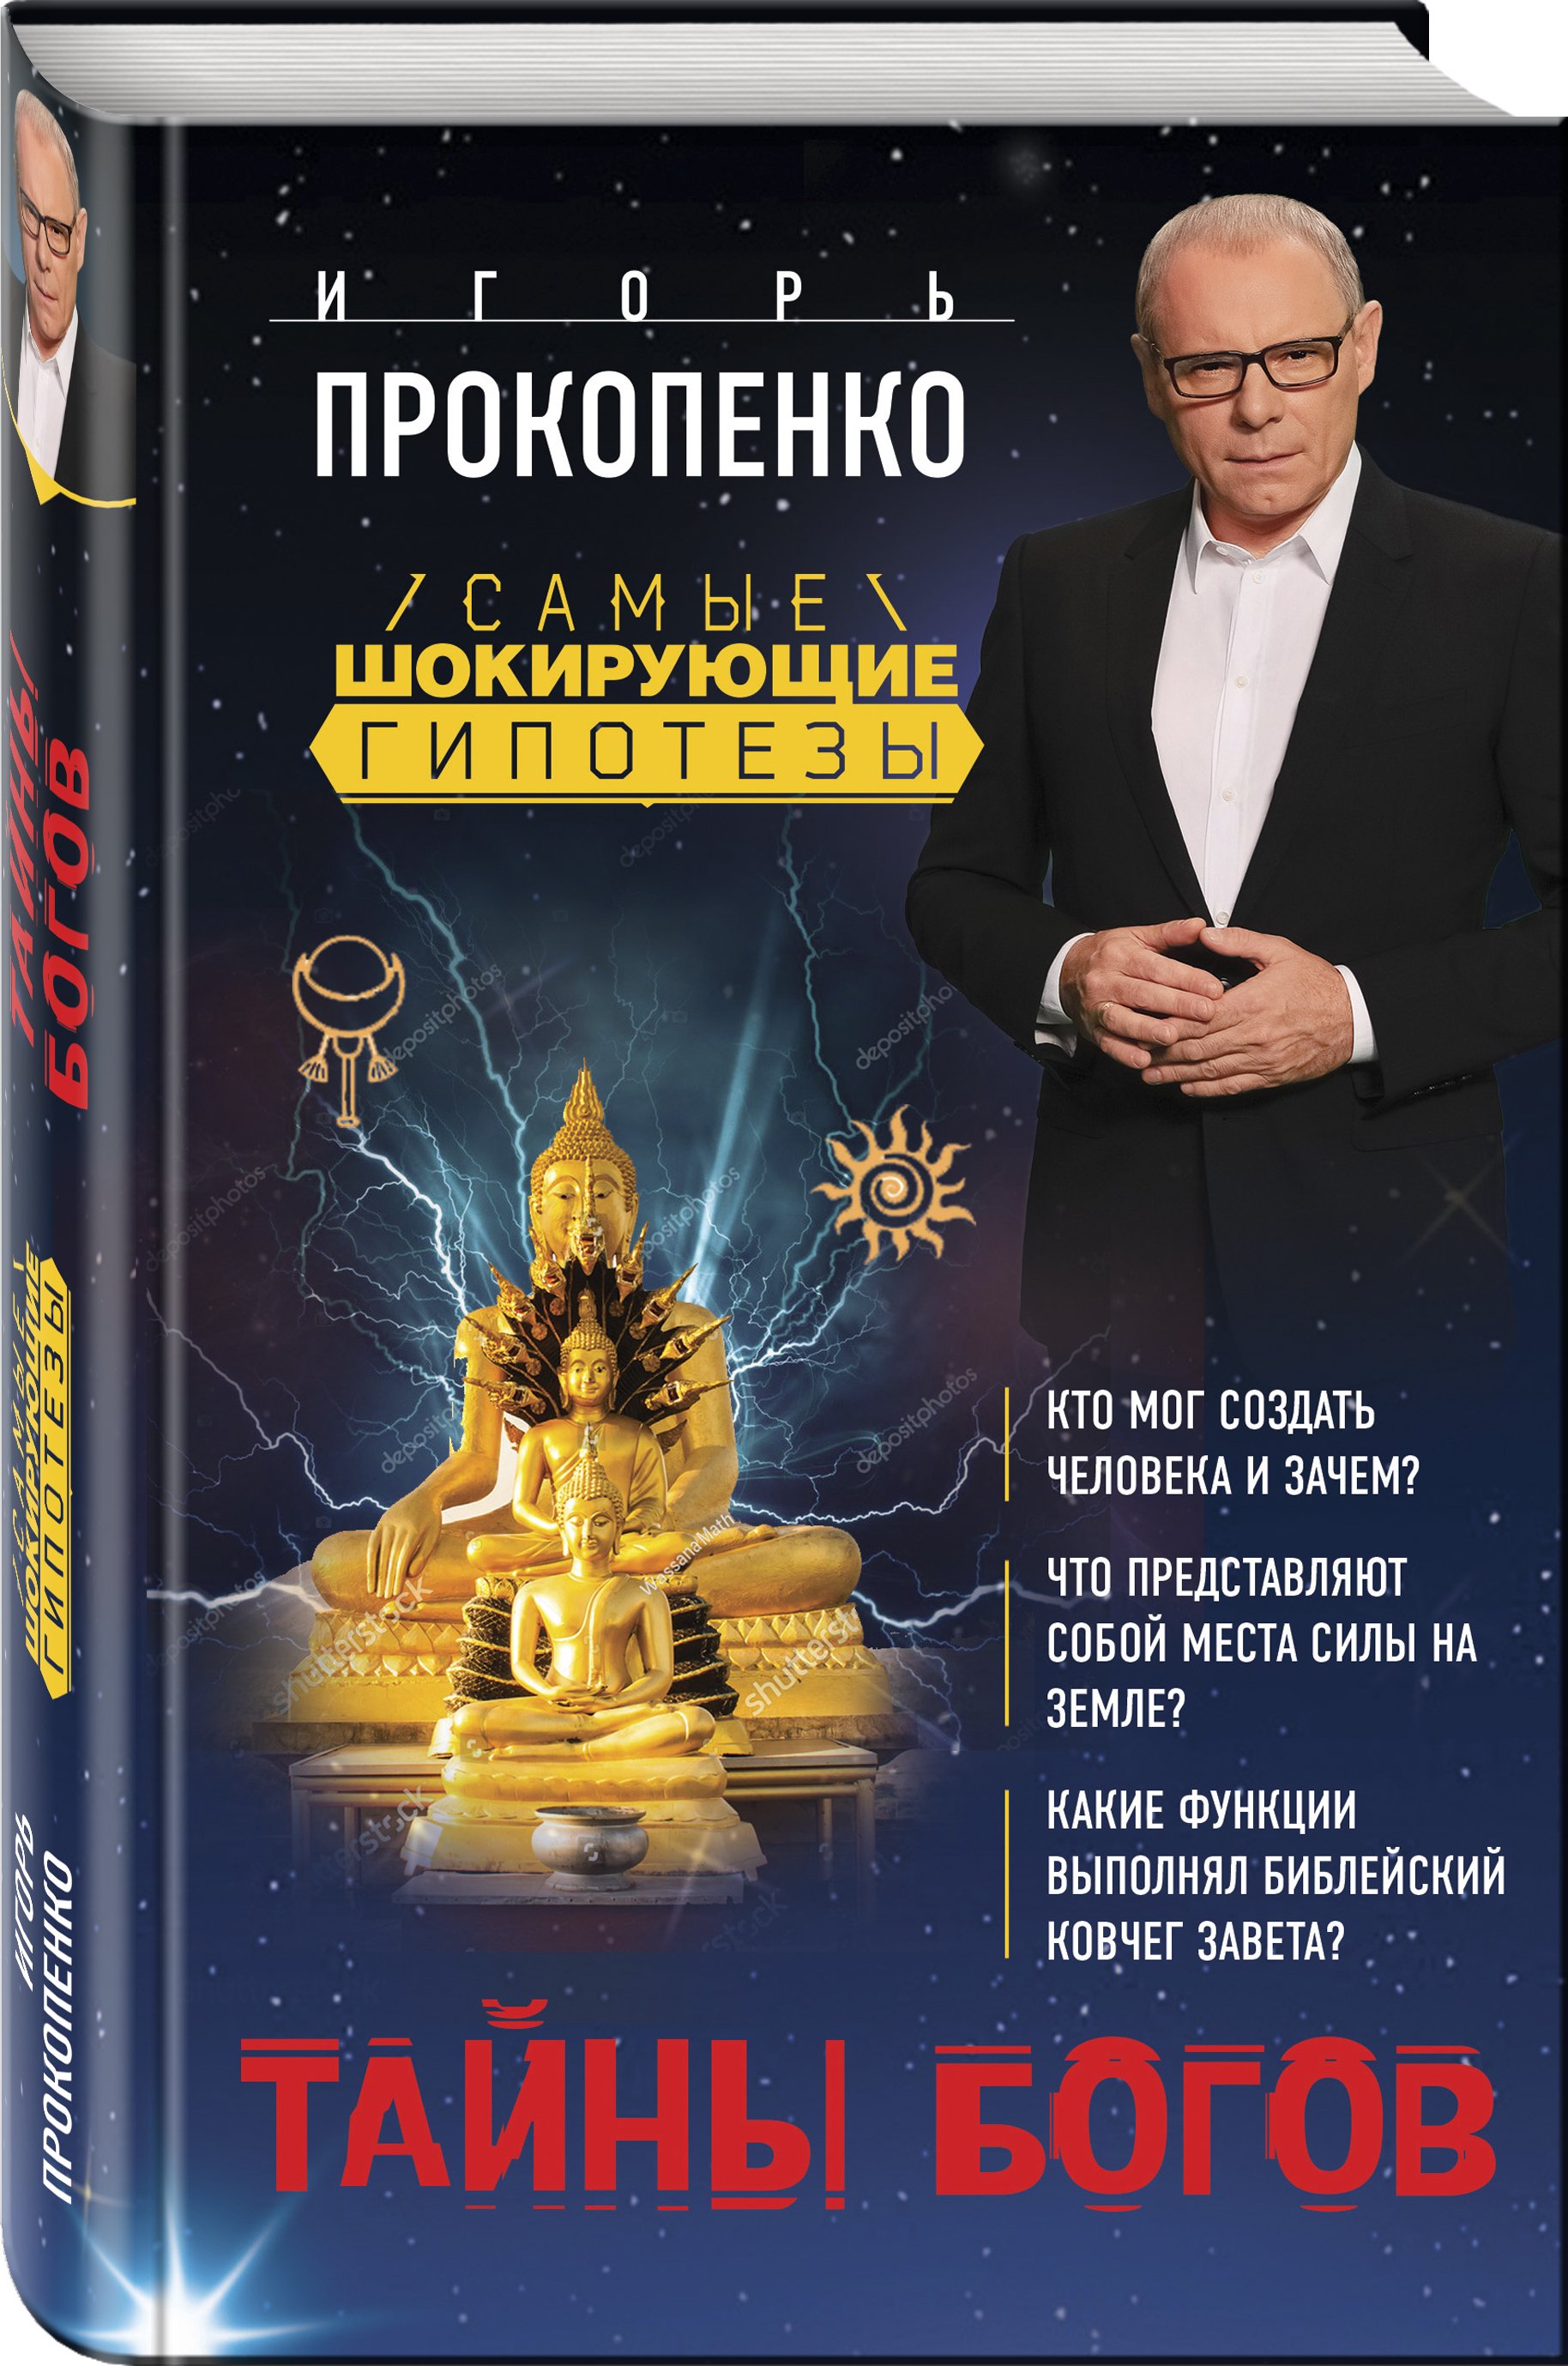 Прокопенко Игорь Станиславович - Тайны богов